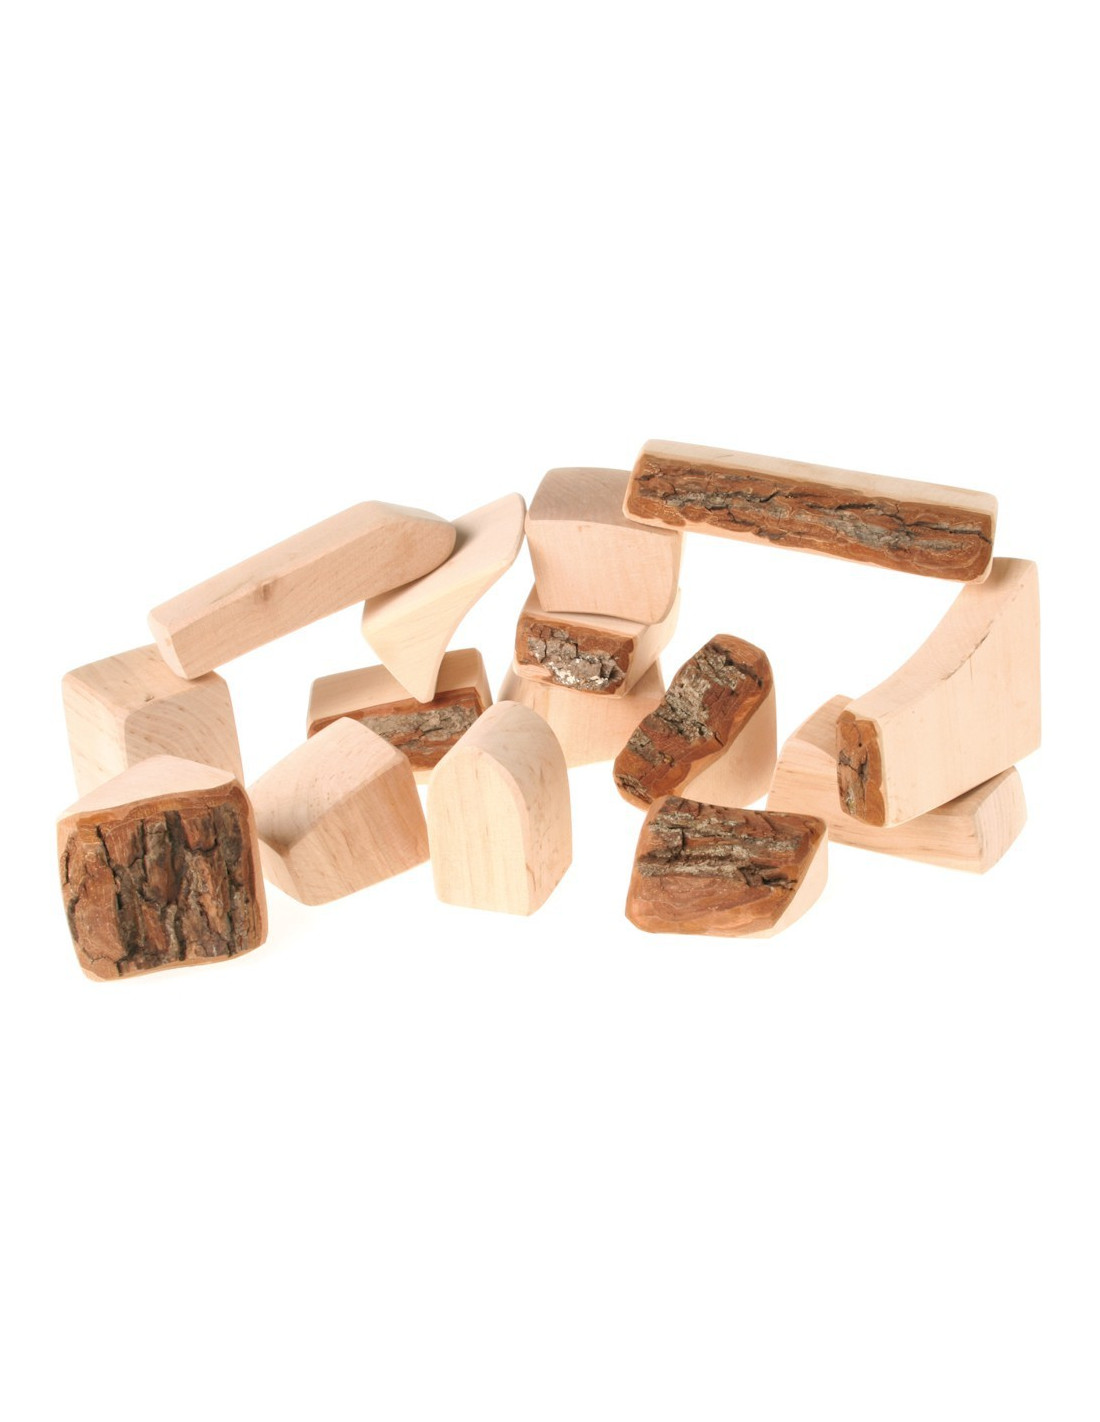 Natuurlijke - Duurzaam houten speelgoed